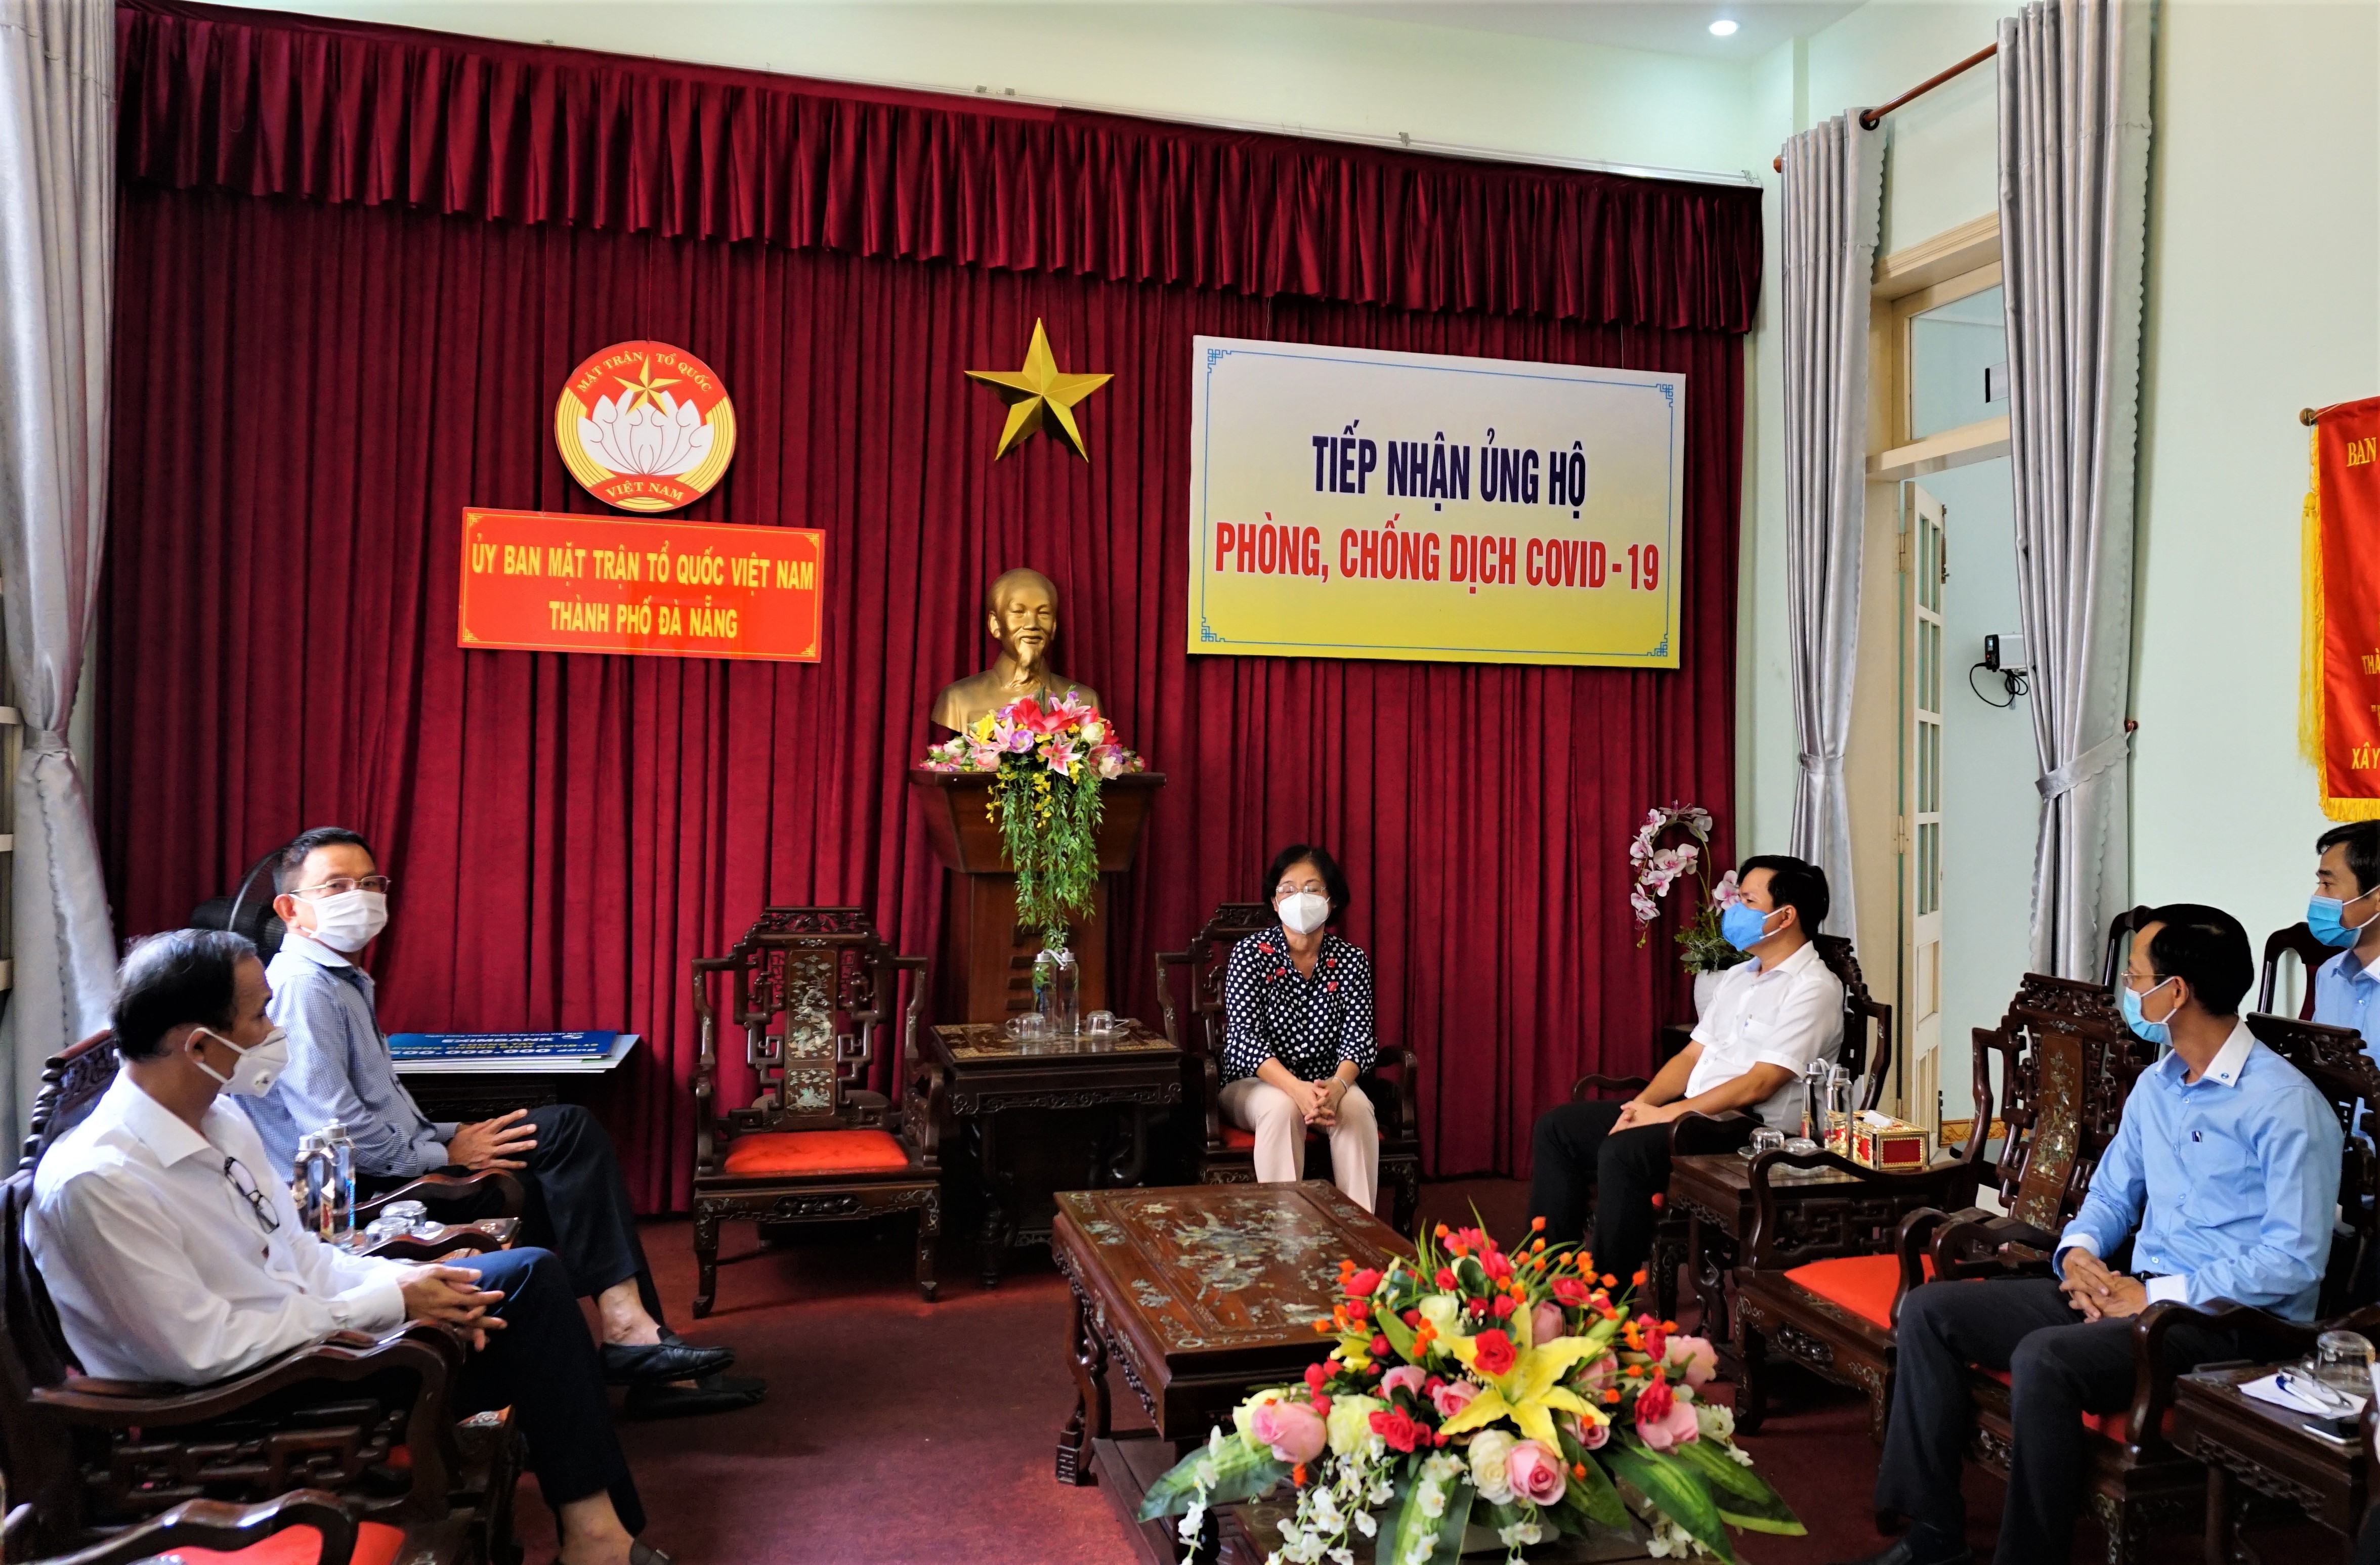 Vietcombank ủng hộ 5 tỷ đồng chung tay cùng thành phố Đà Nẵng đẩy lùi COVID-19 - Ảnh 2